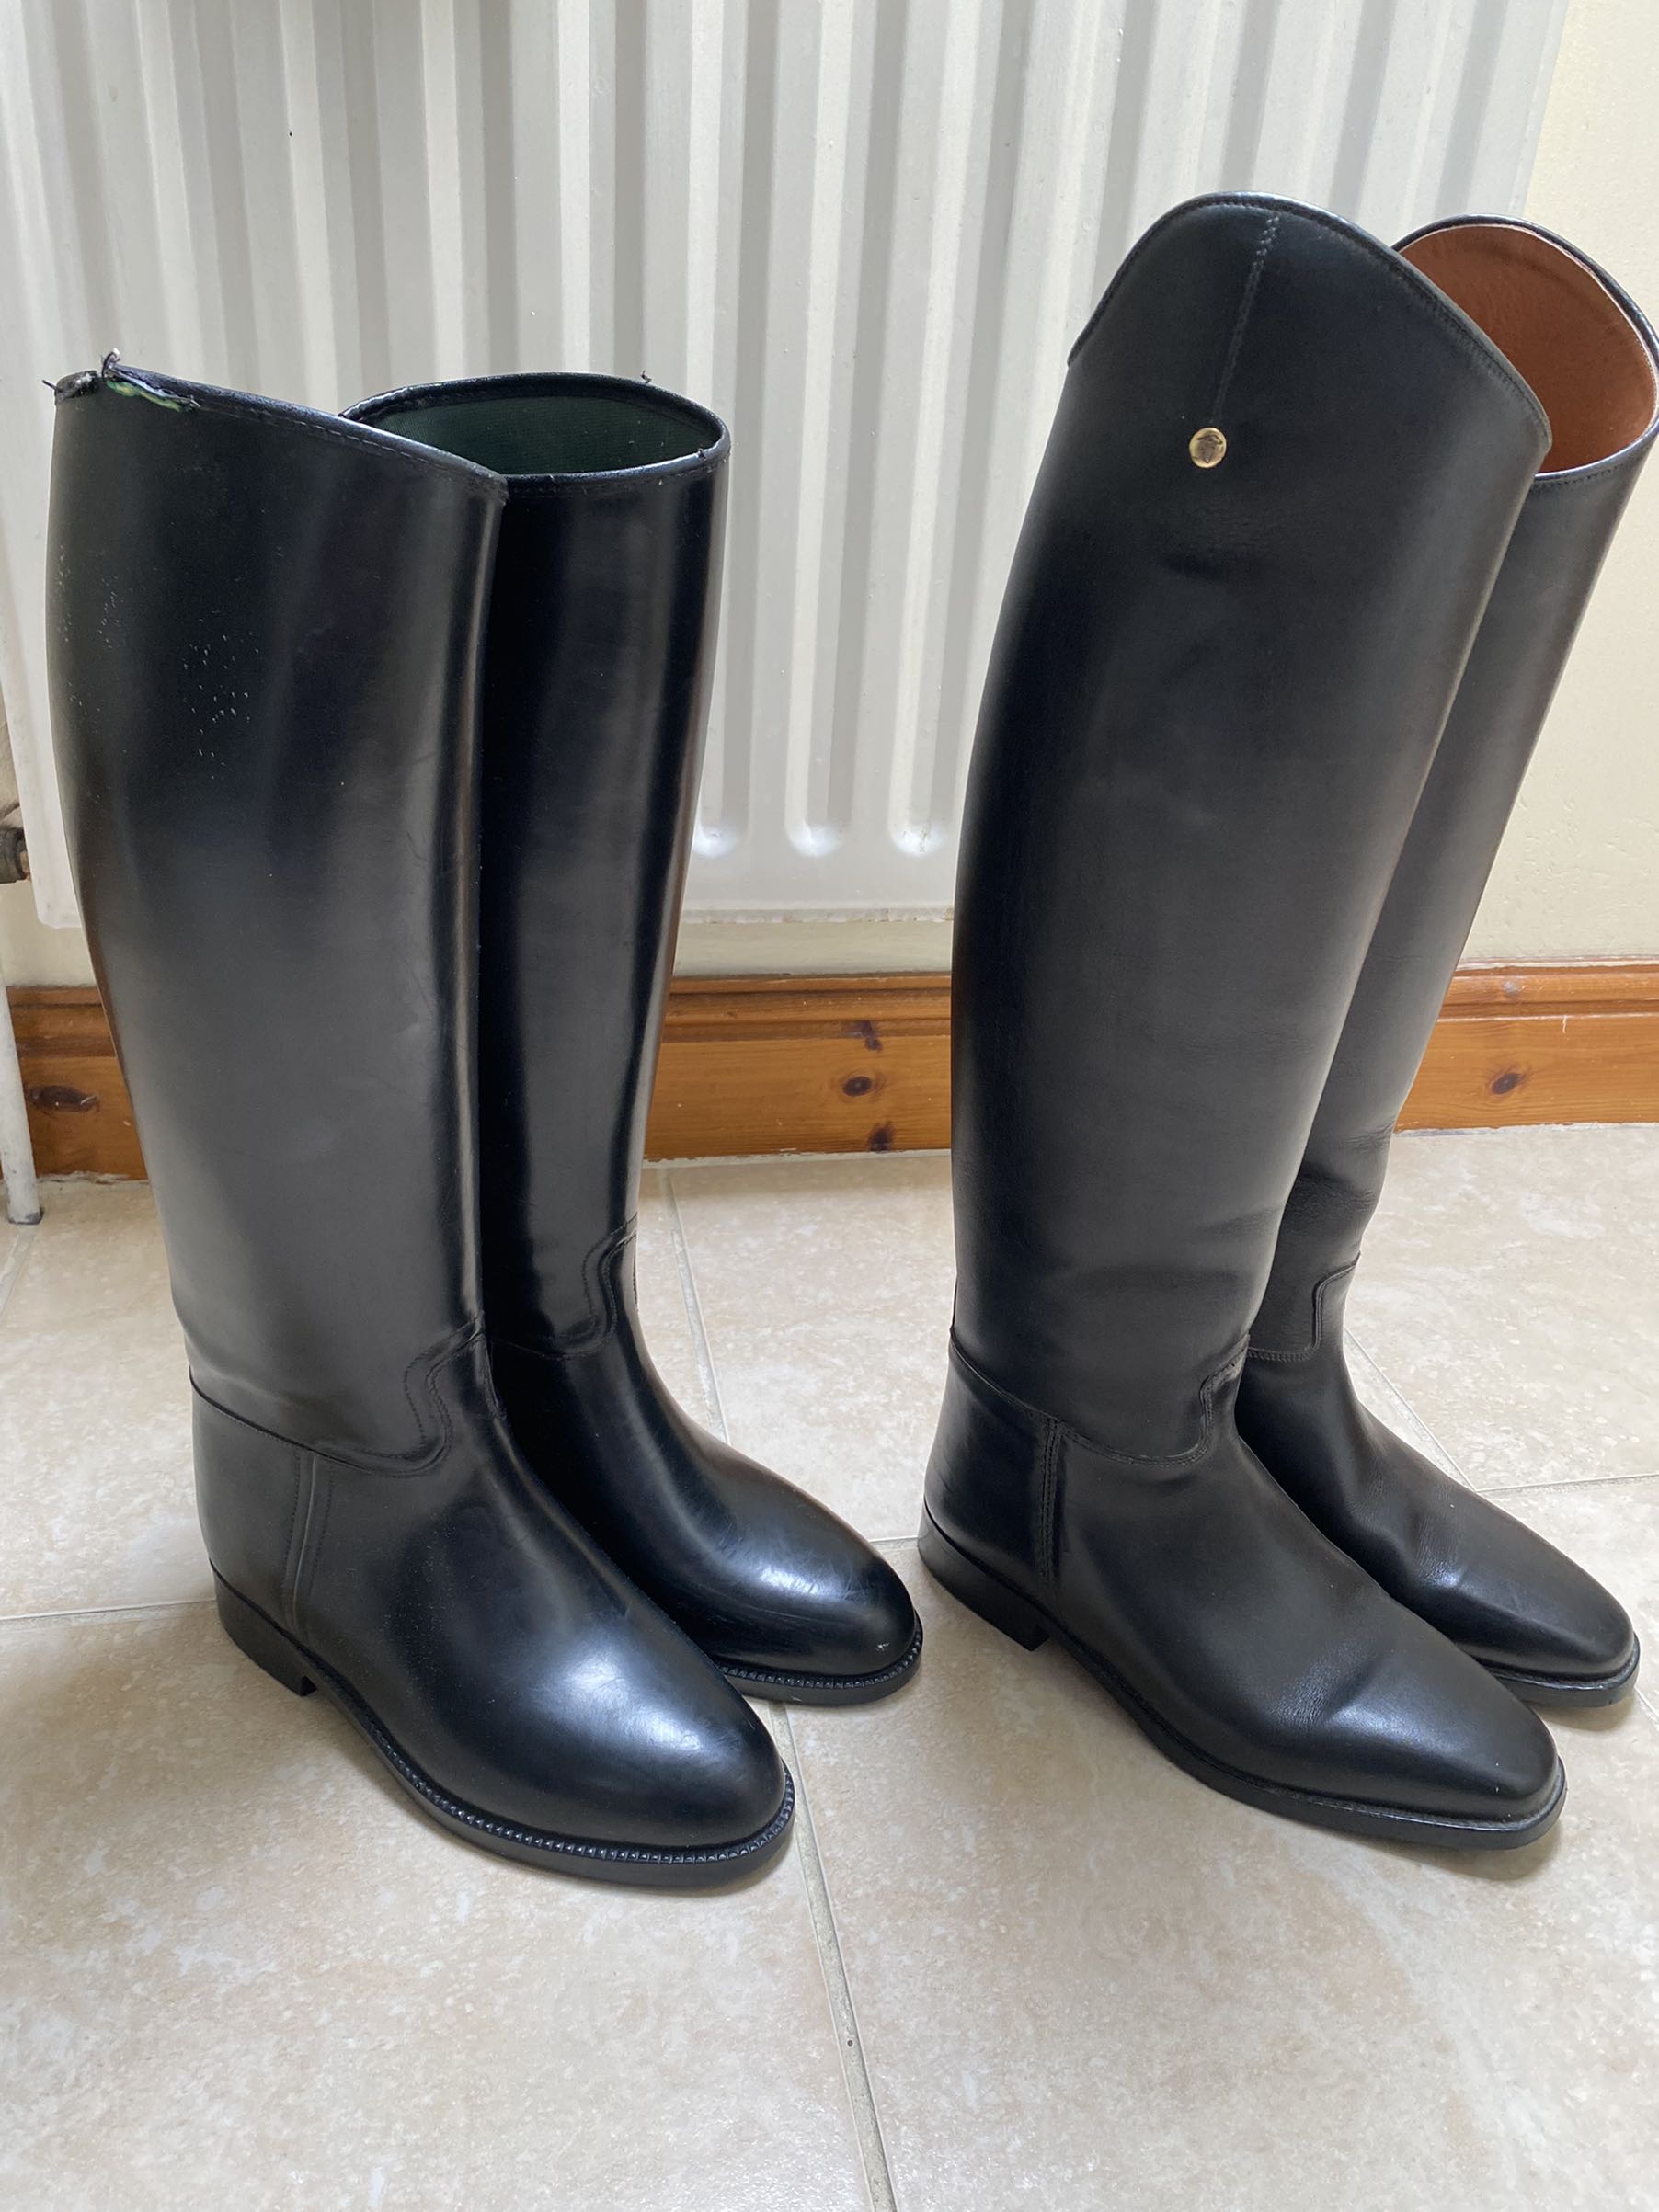 Rubber or Leather boots ?? 27259-rubber-or-leather-boots---.jpg